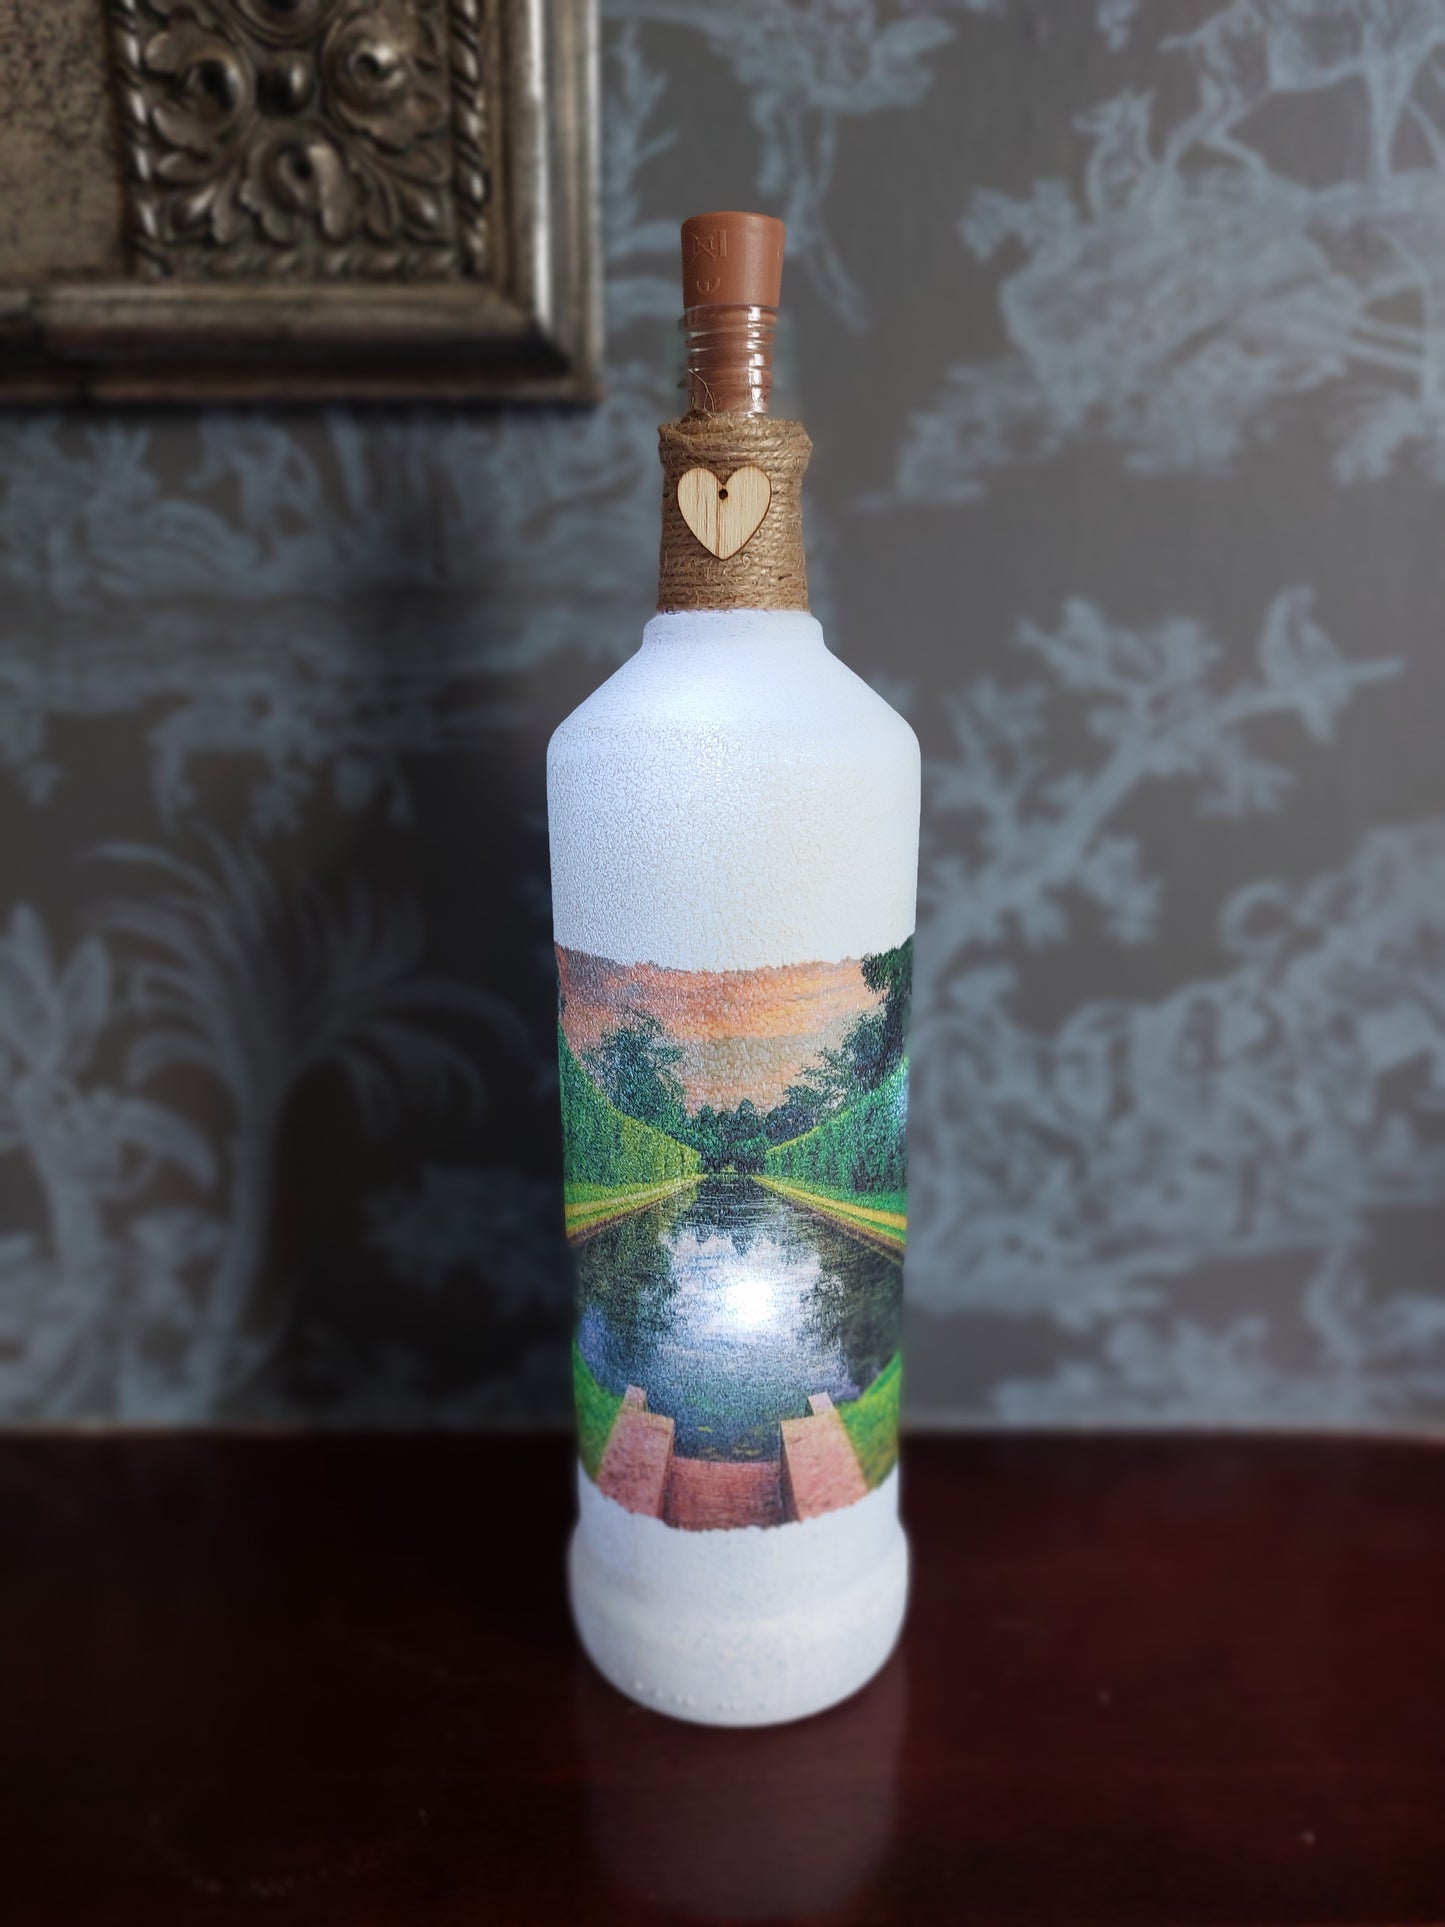 Antrim Castle Gardens Light up bottle